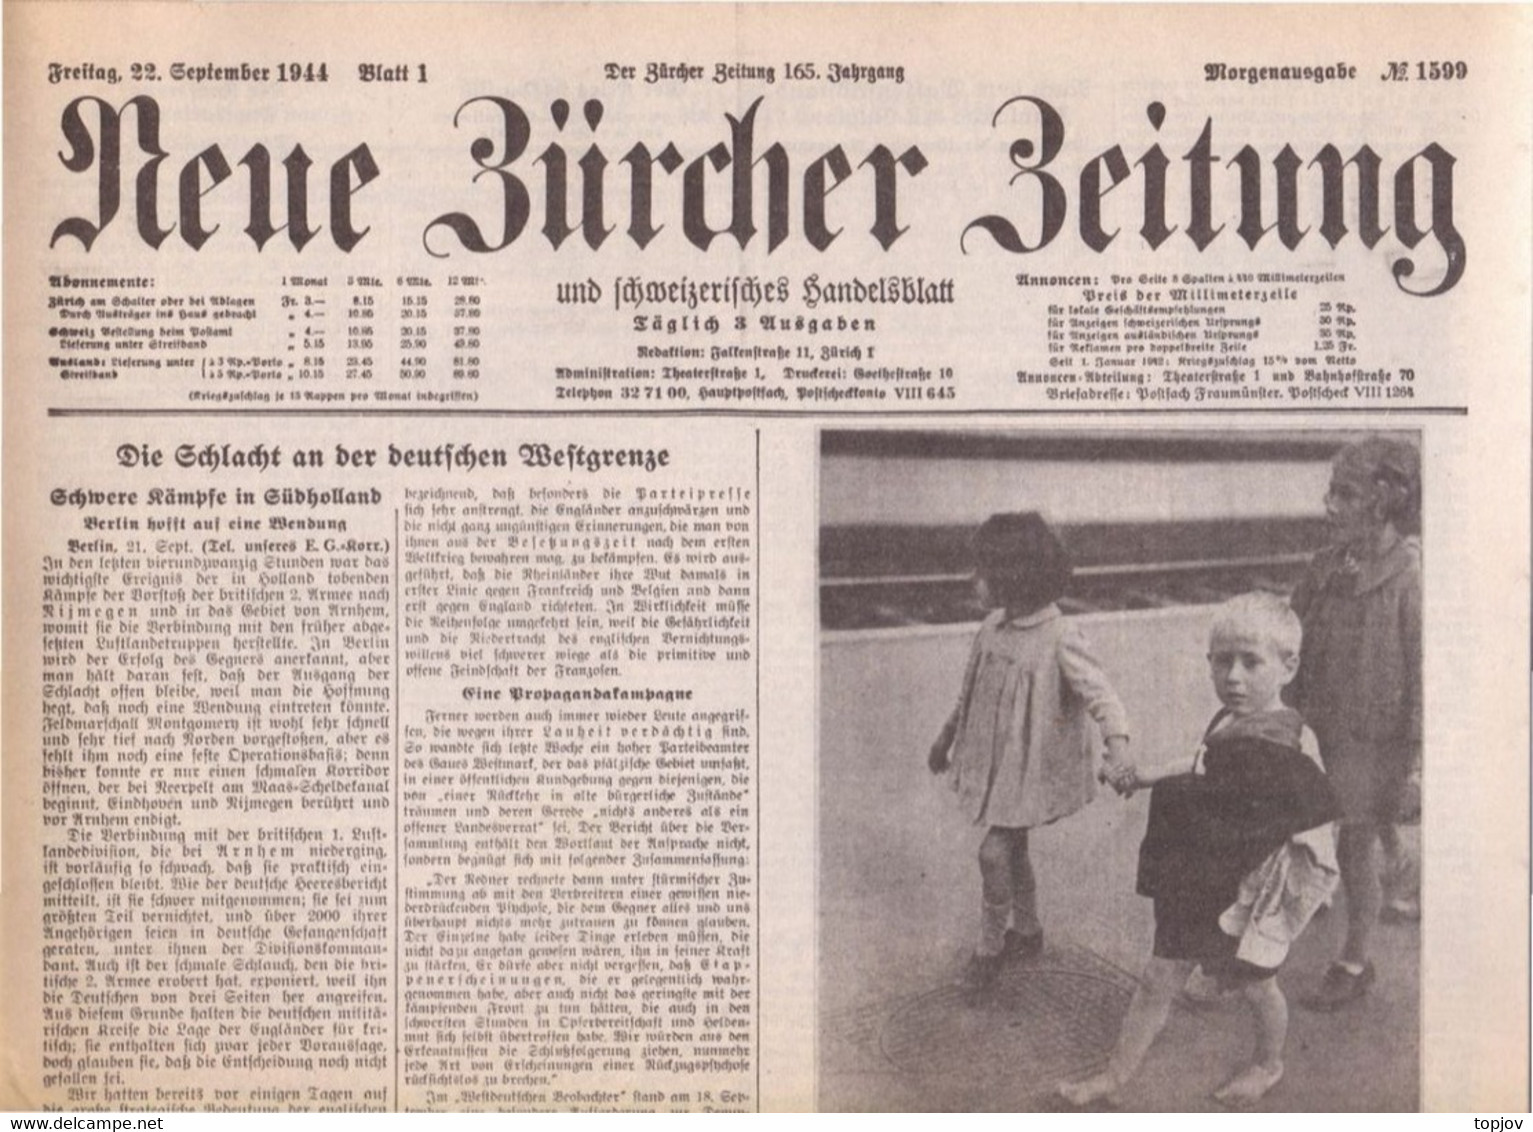 SCHWEIZ - NEUE ZÜRCHER ZEITUNG - KRIEG - ZÜRICH - Komplette Zeitung - 1943 - Algemene Informatie